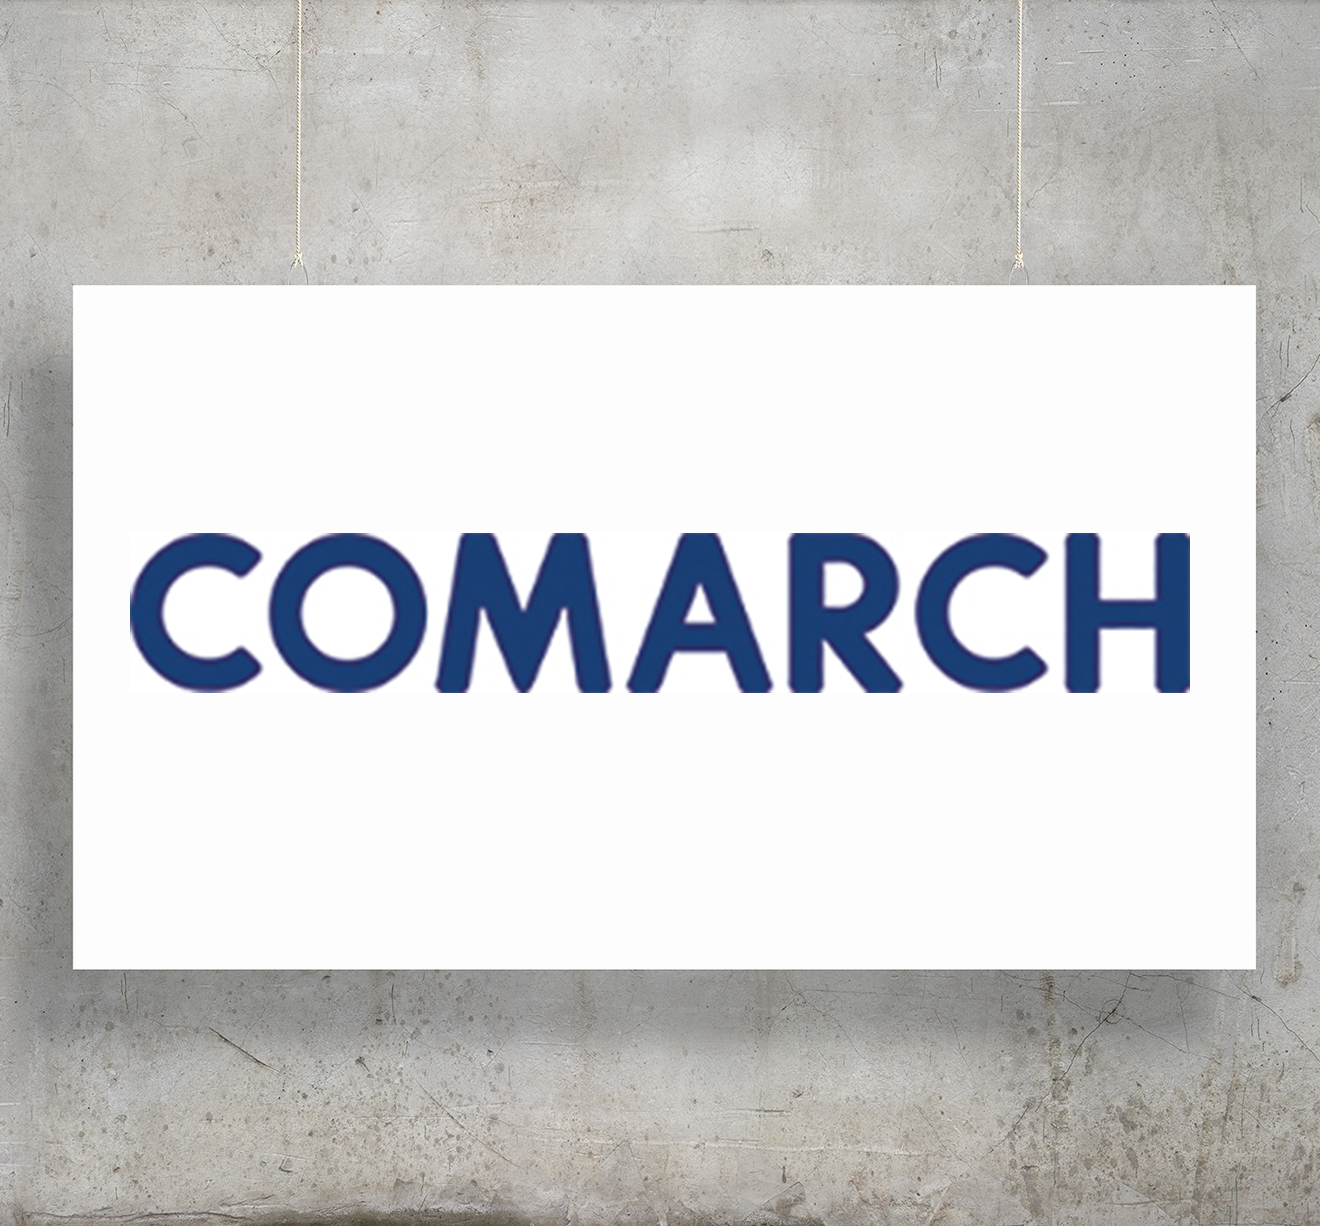 Company Profile - Comarch